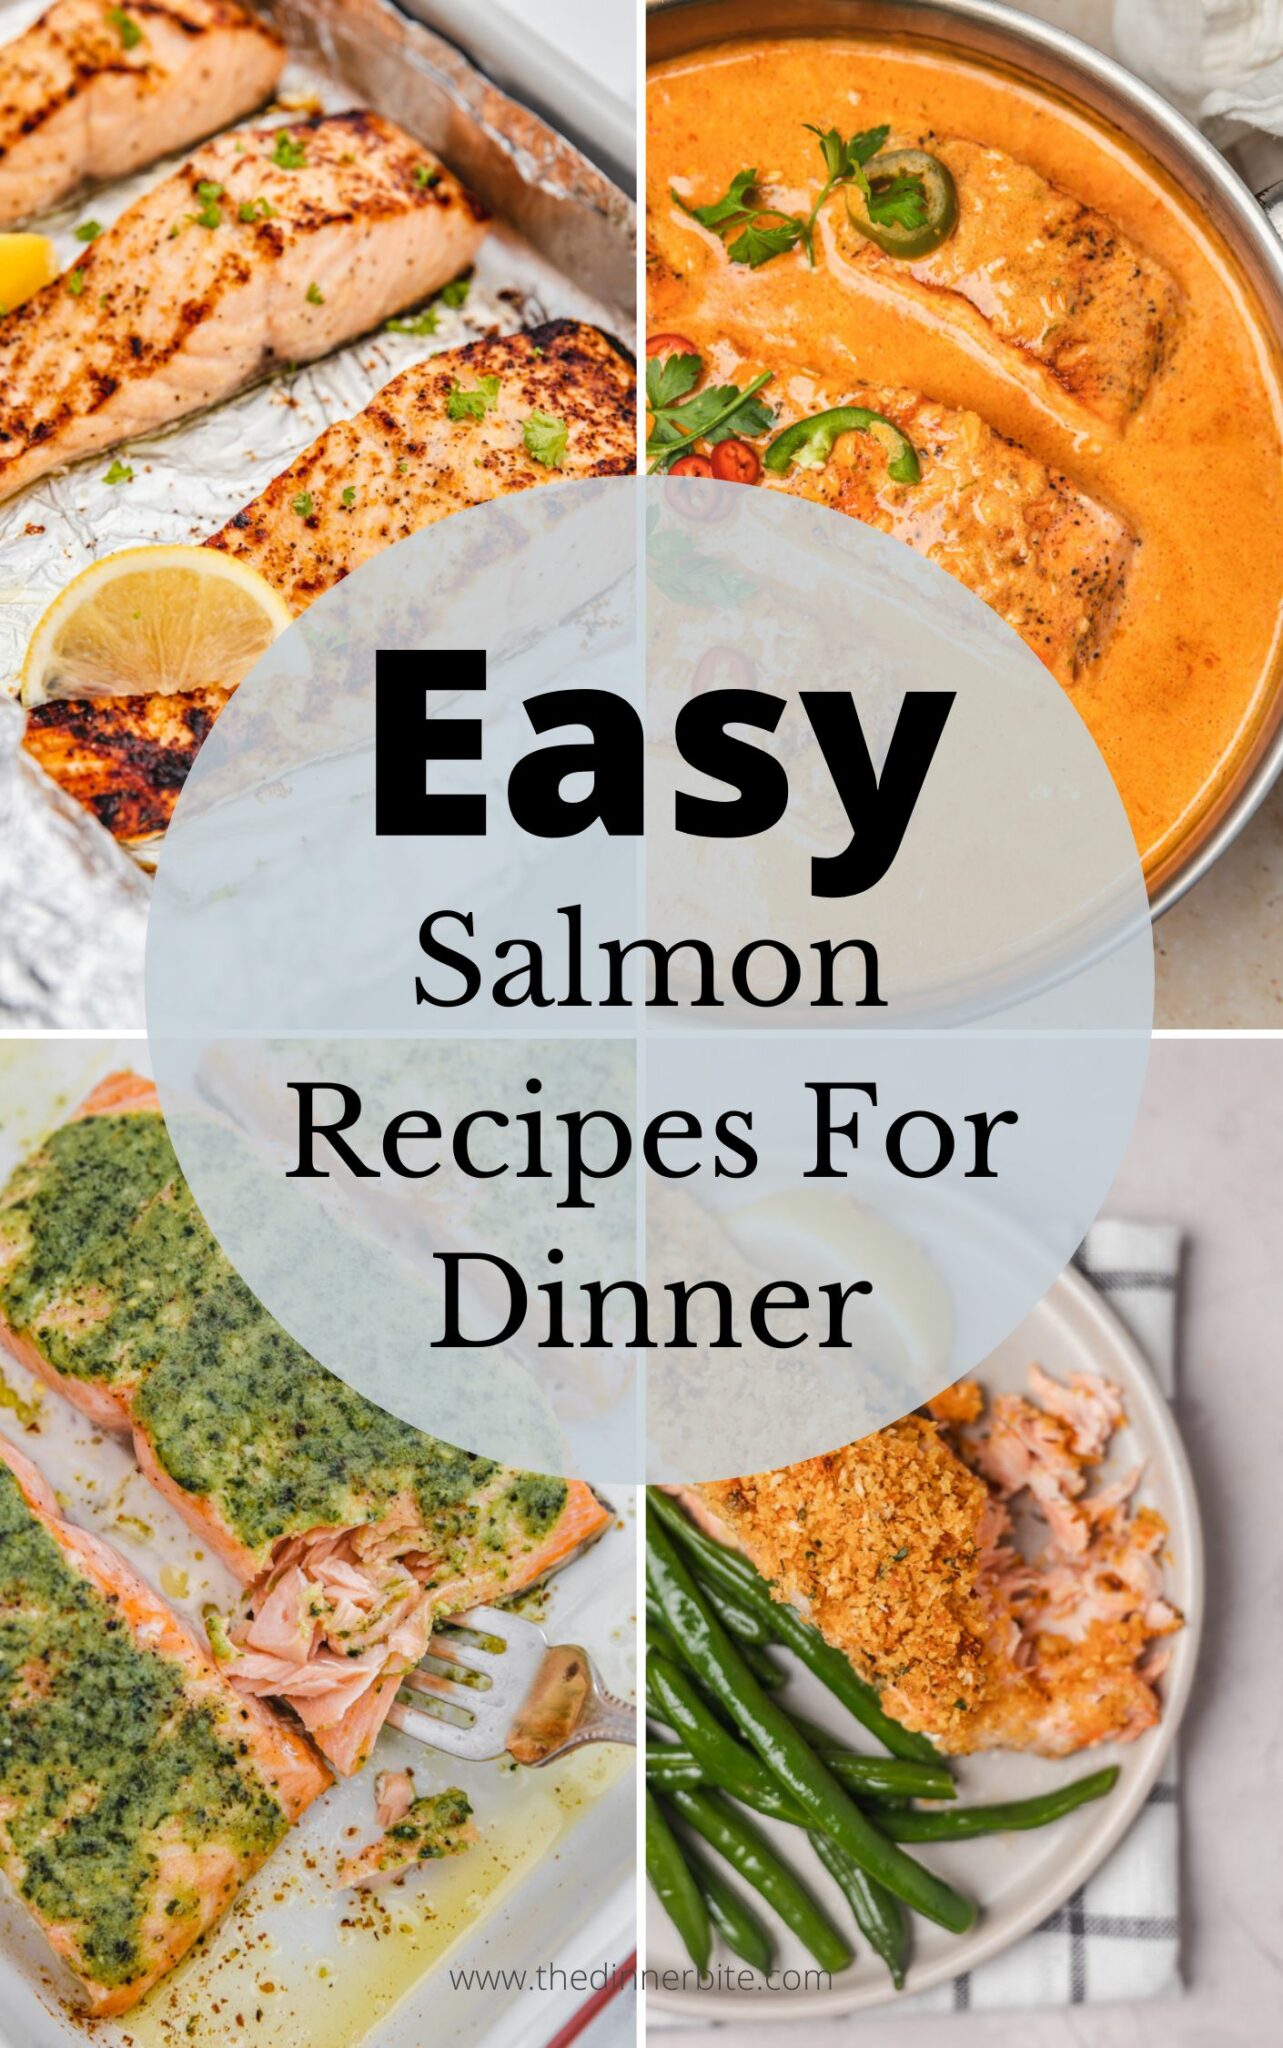 Easy Salmon Recipes For Dinner - The Dinner Bite